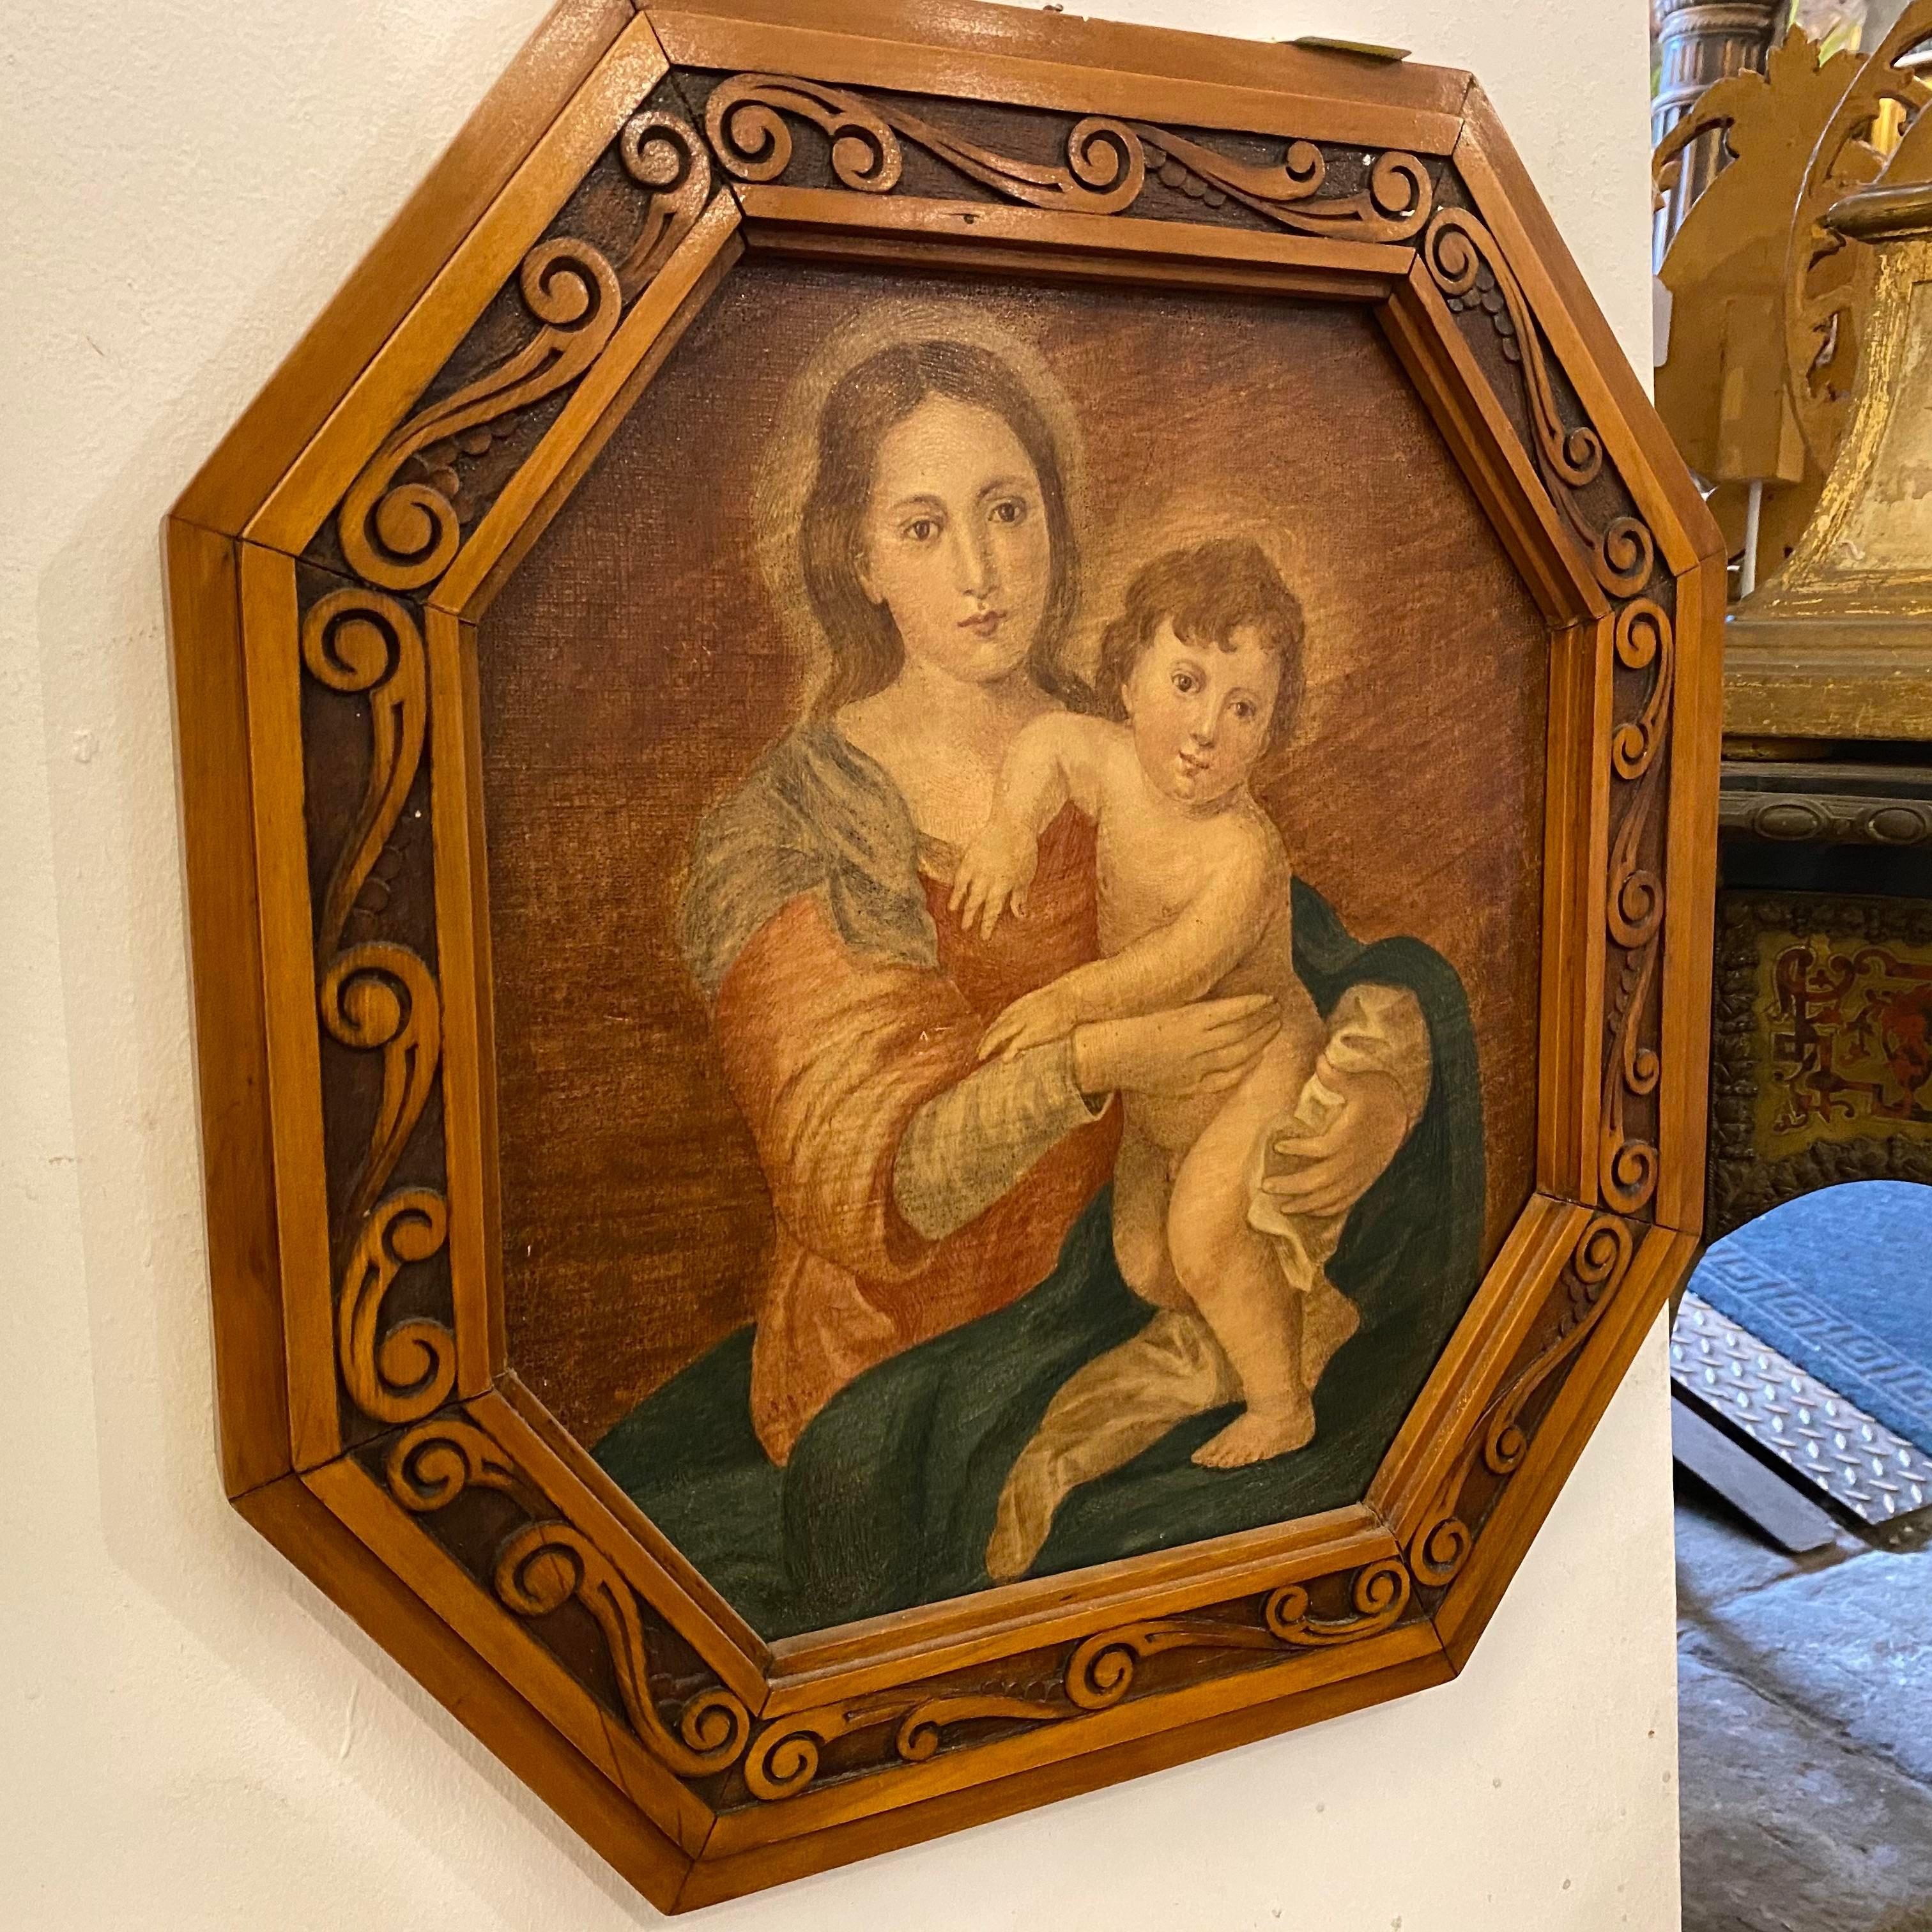 Ein italienisches Popolar-Öl auf Leinwand, das die Madonna mit dem Jesuskind darstellt, gerahmt in einem handgeschnitzten Obstholzrahmen. Es ist in perfektem Zustand.